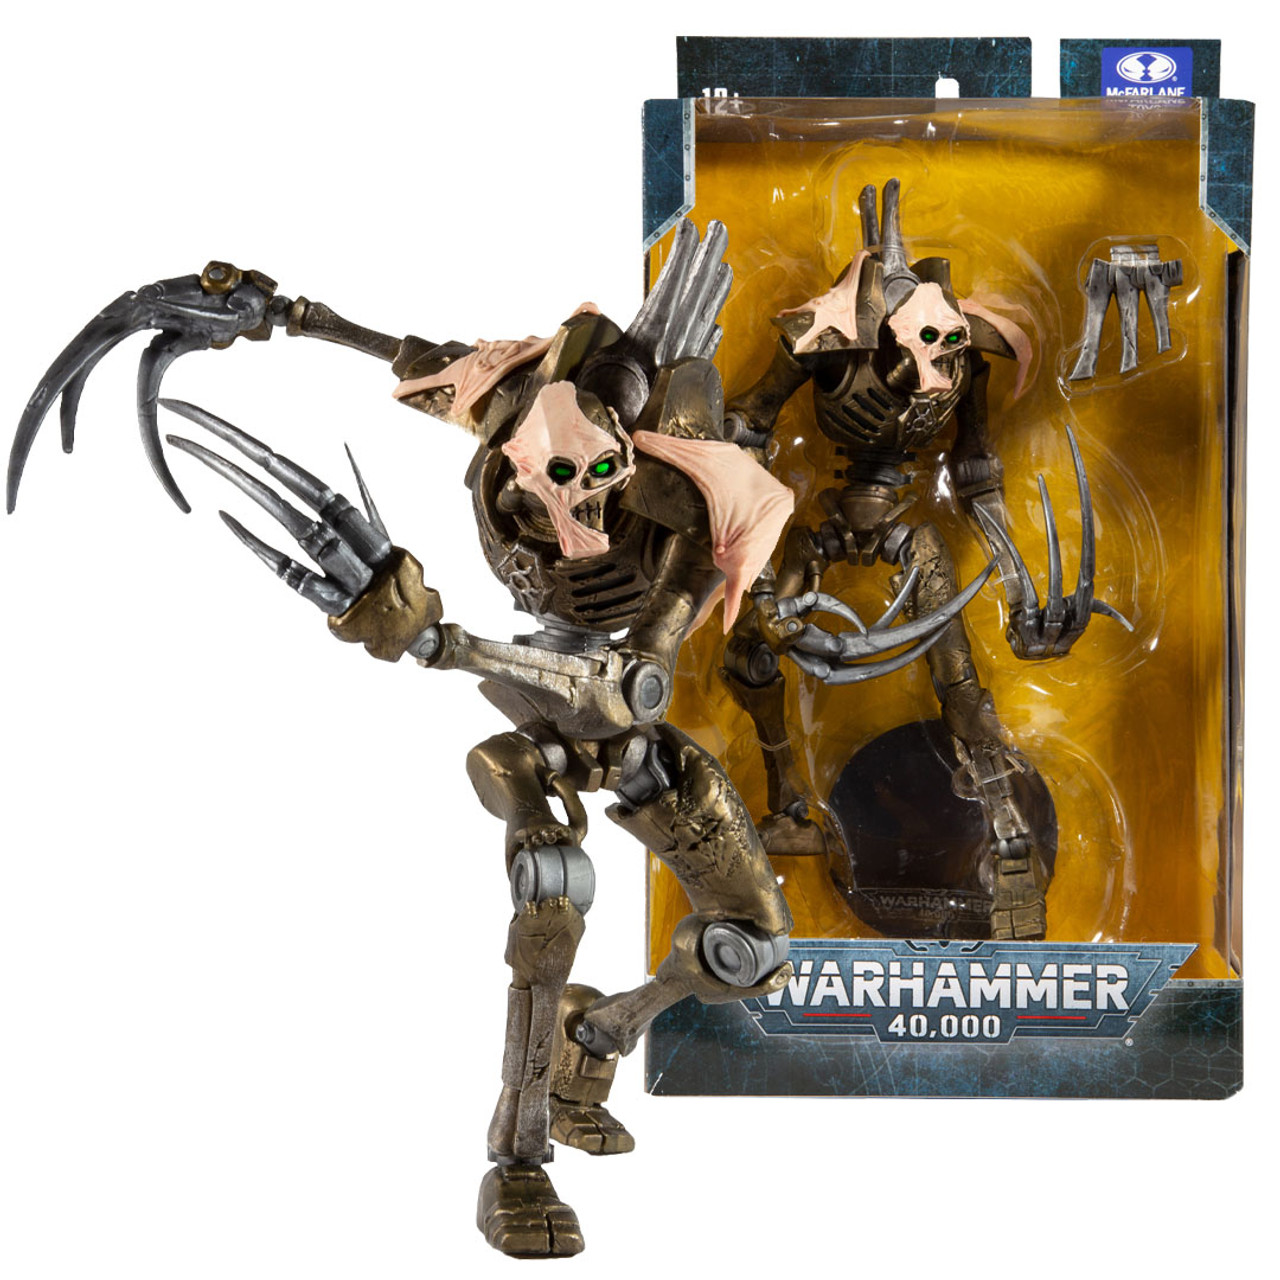 Warhammer 40k figurine Necron Flayed One 18 cm